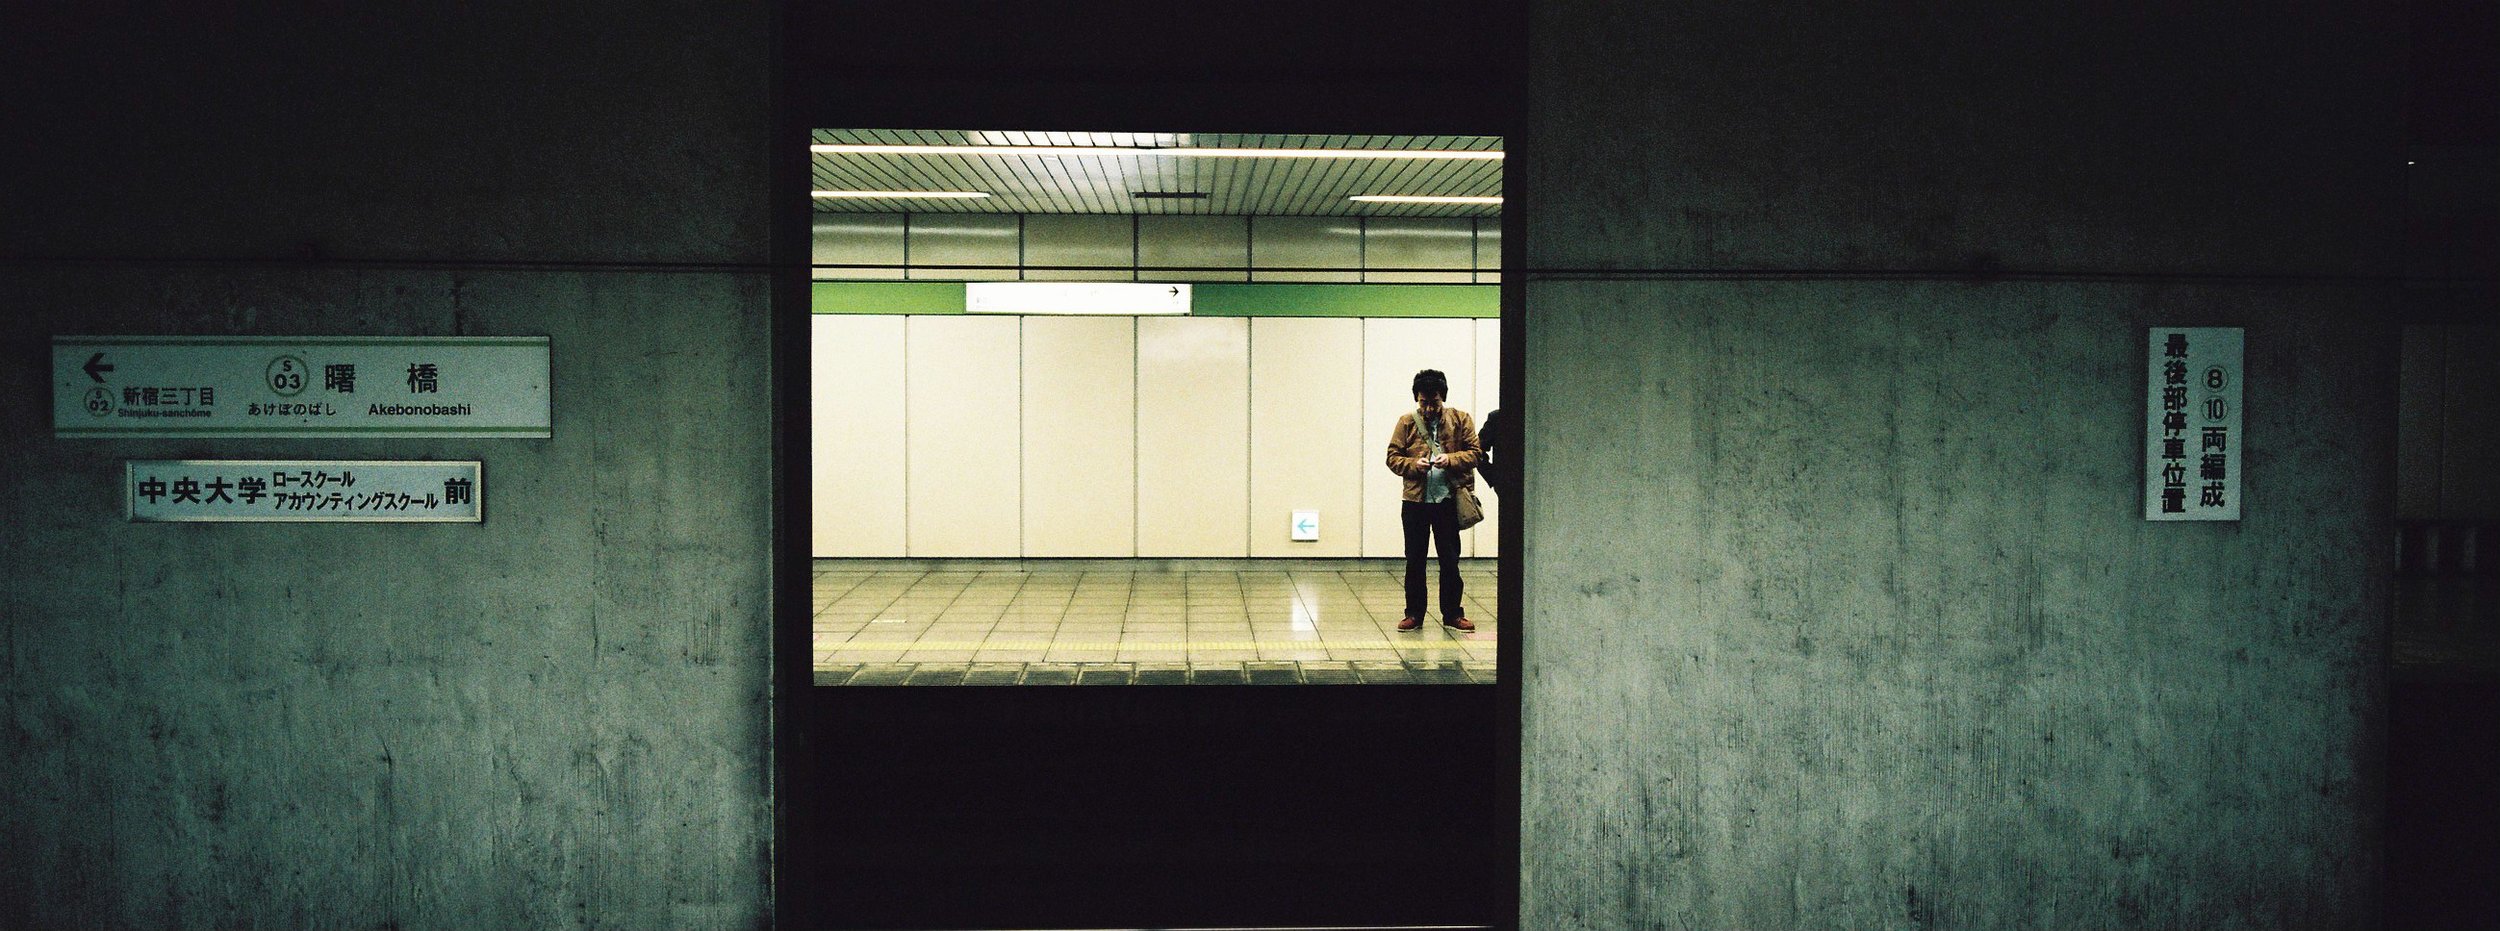 Shinjuku Subway